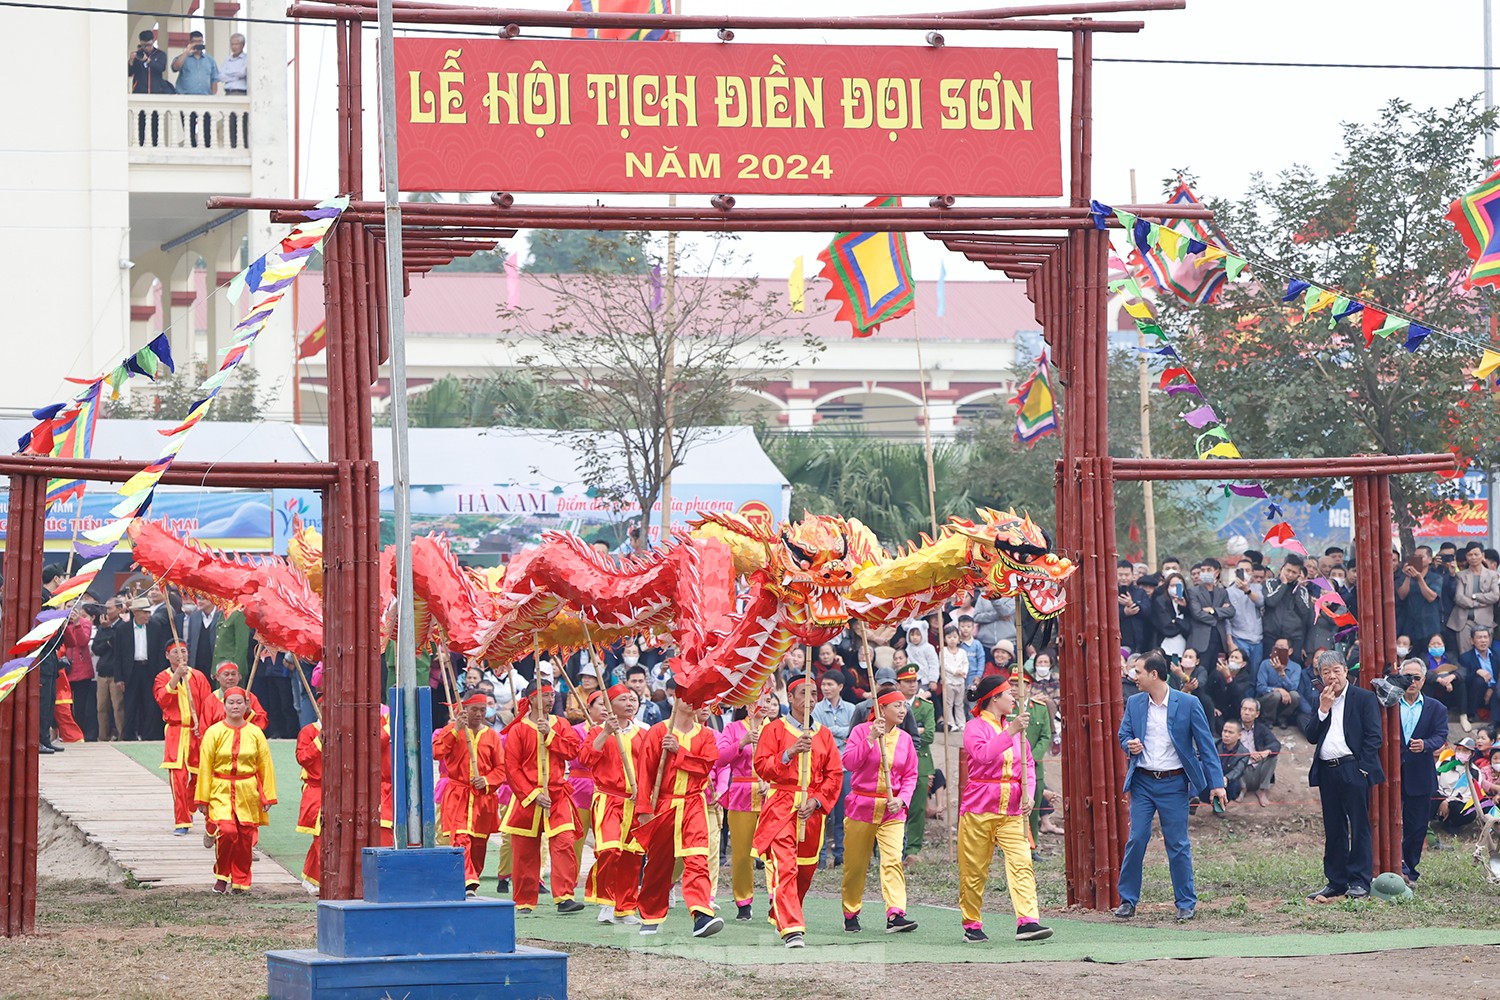 Lễ hội Tịch điền Đọi Sơn cầu mưa thuận gió hòa, mùa màng tươi tốt.